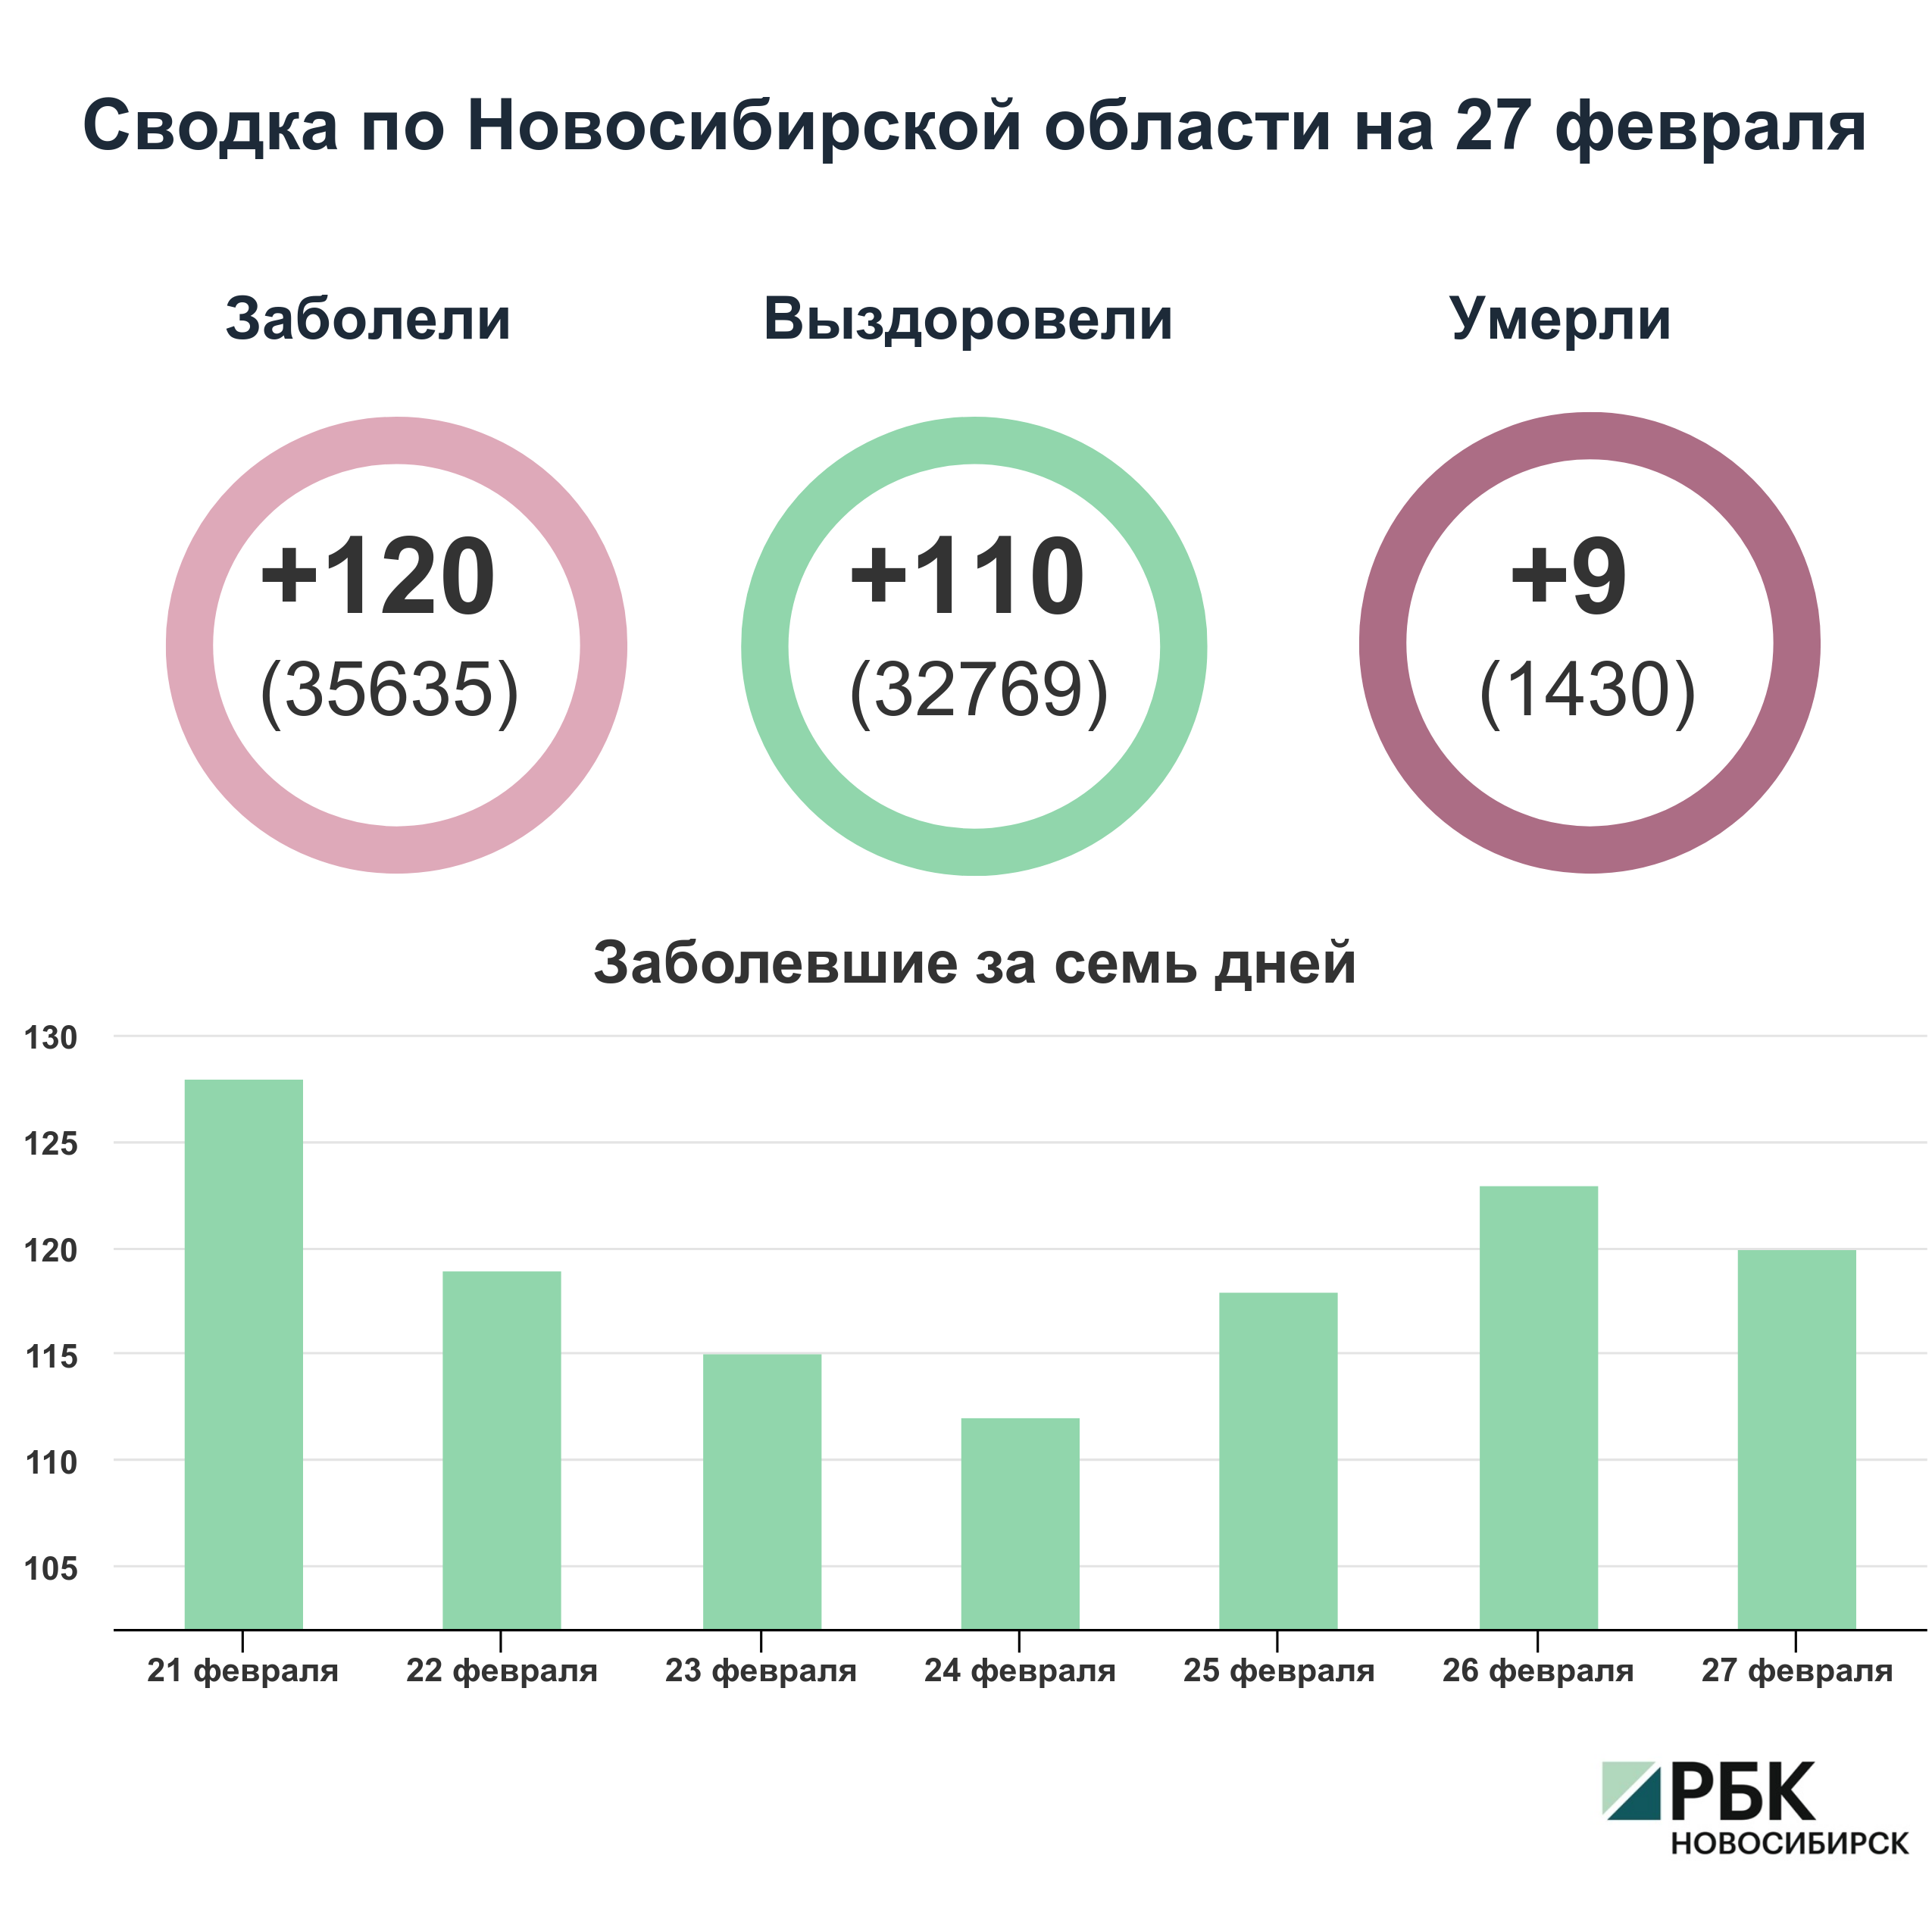 Коронавирус в Новосибирске: сводка на 27 февраля